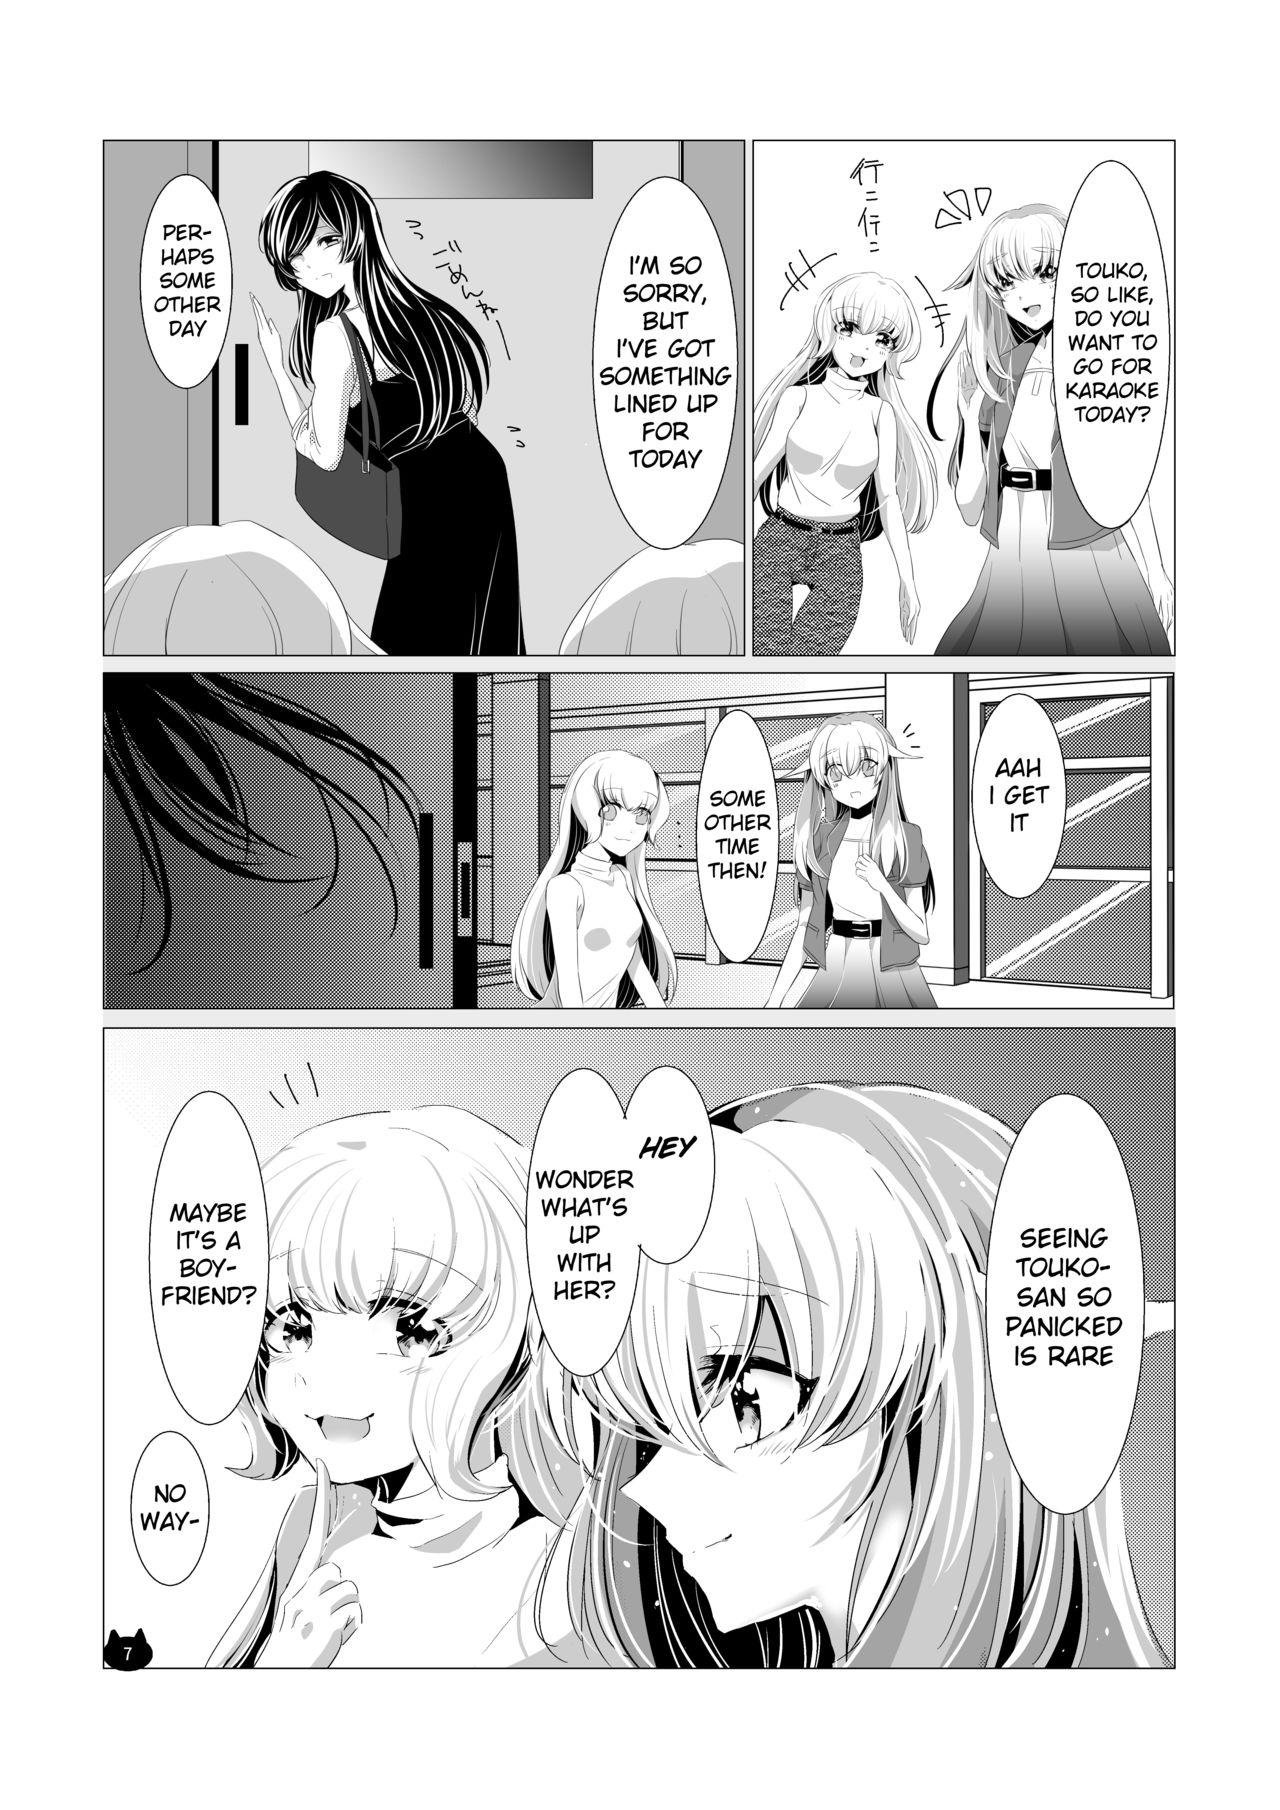 Hot Girls Fucking Neko no Kimochi - Yagate kimi ni naru | bloom into you Rimming - Page 8